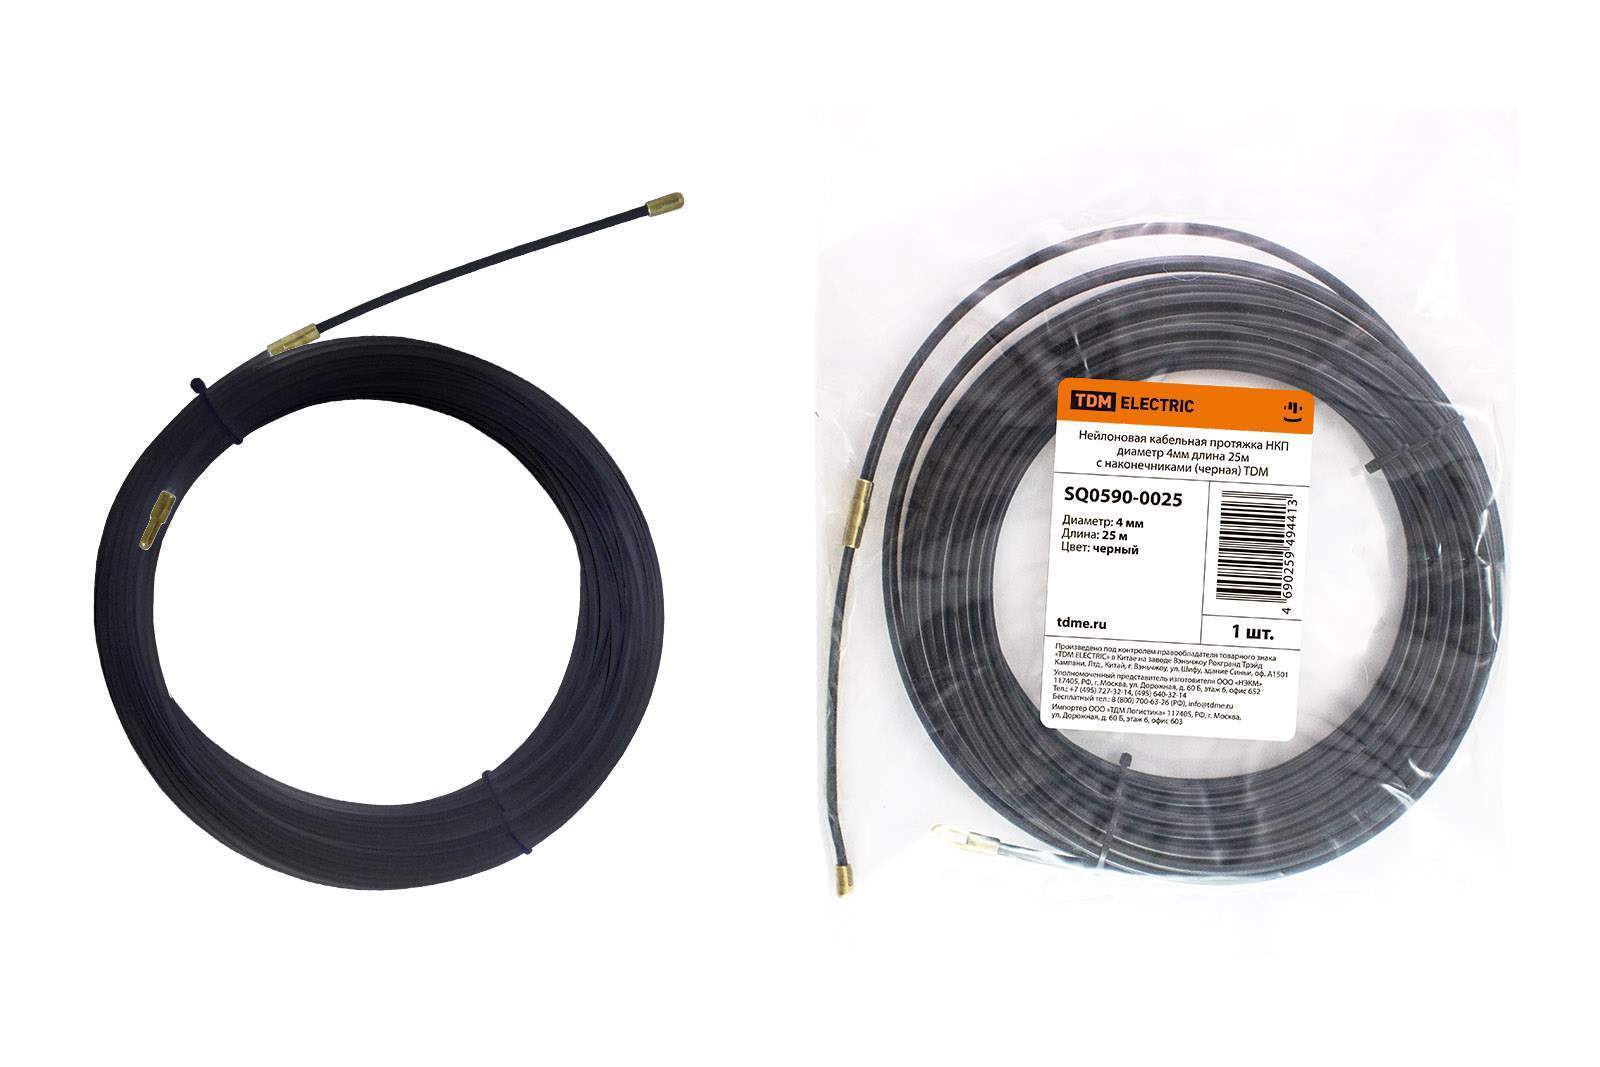 нейлоновая кабельная протяжка нкп диаметр 4мм длина 25м с наконечниками (черная) tdm от BTSprom.by